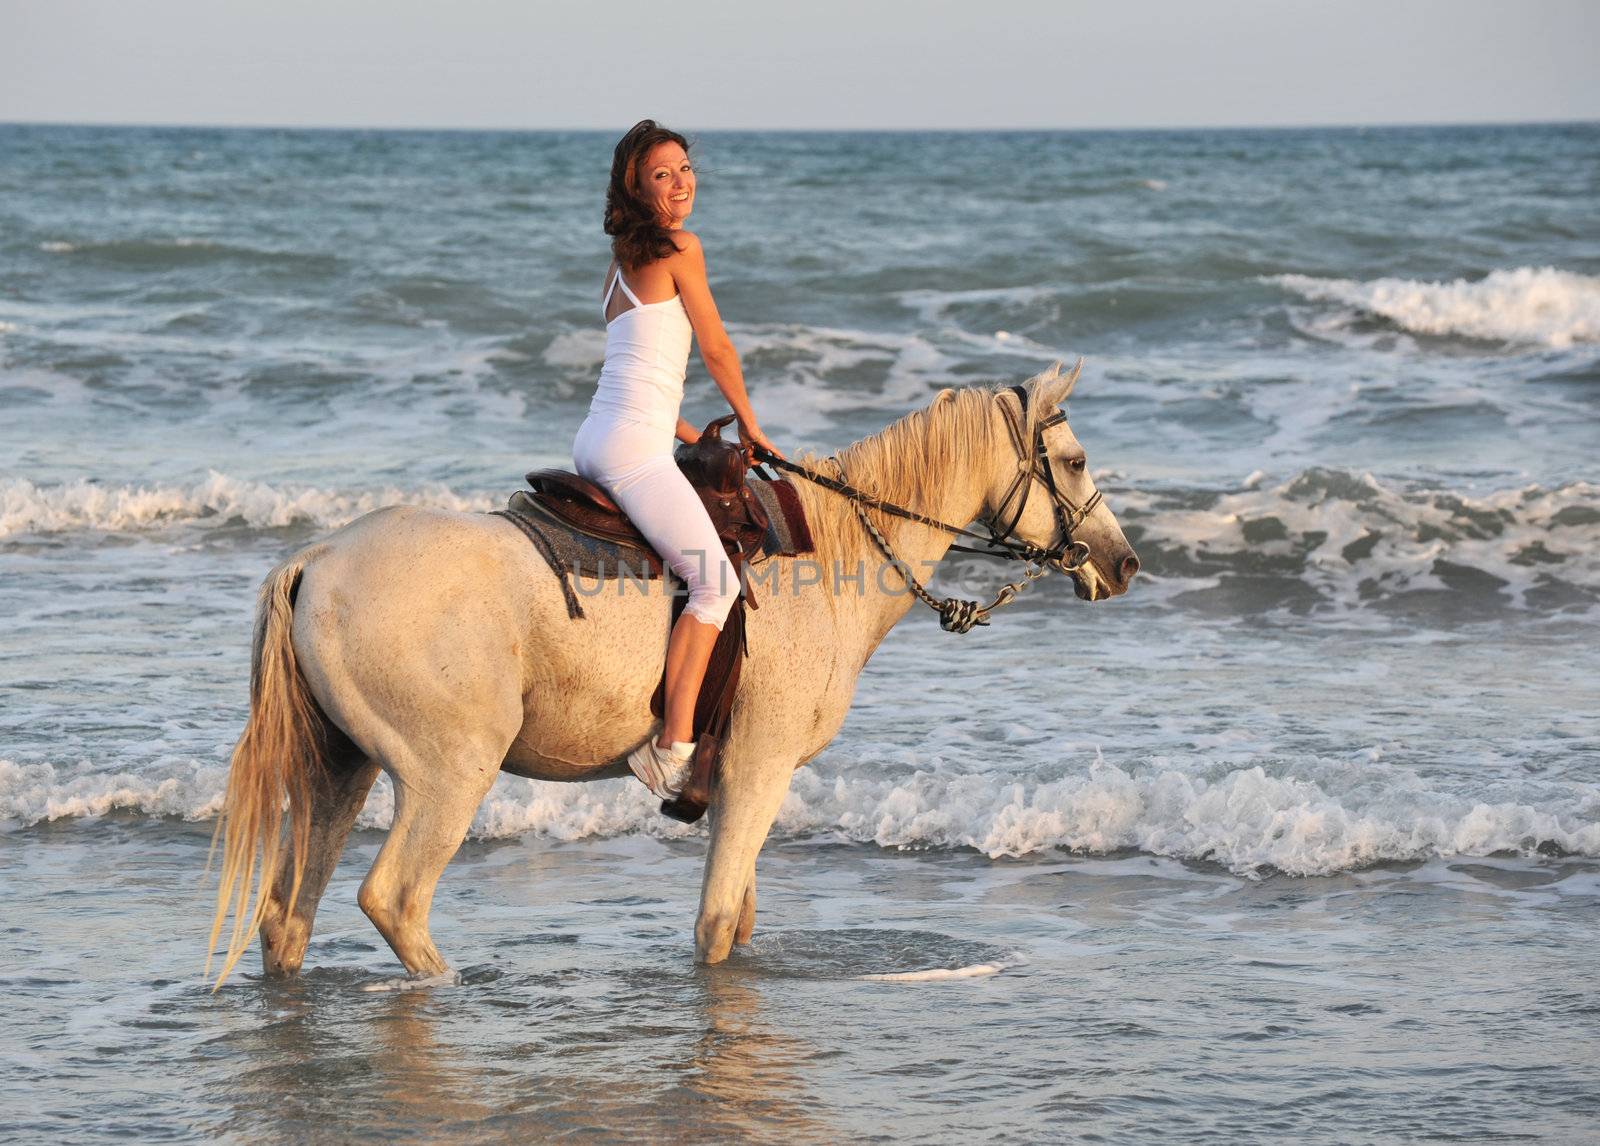 riding woman in sea by cynoclub